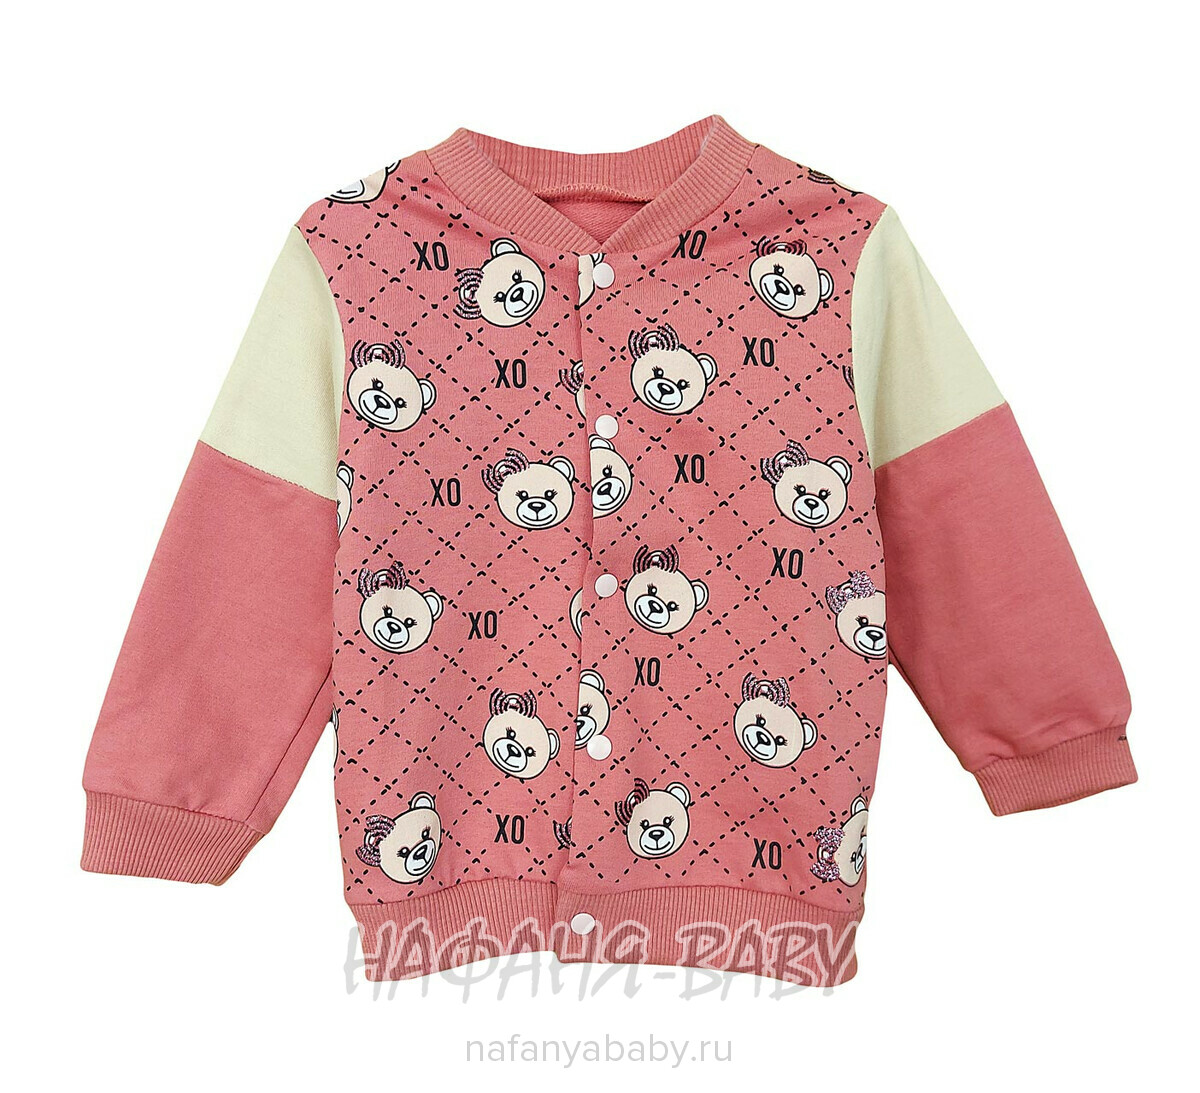 Детский костюм Happy Baby арт. 12024 от 6 до 24 мес, цвет чайная роза с бежевым, оптом Турция